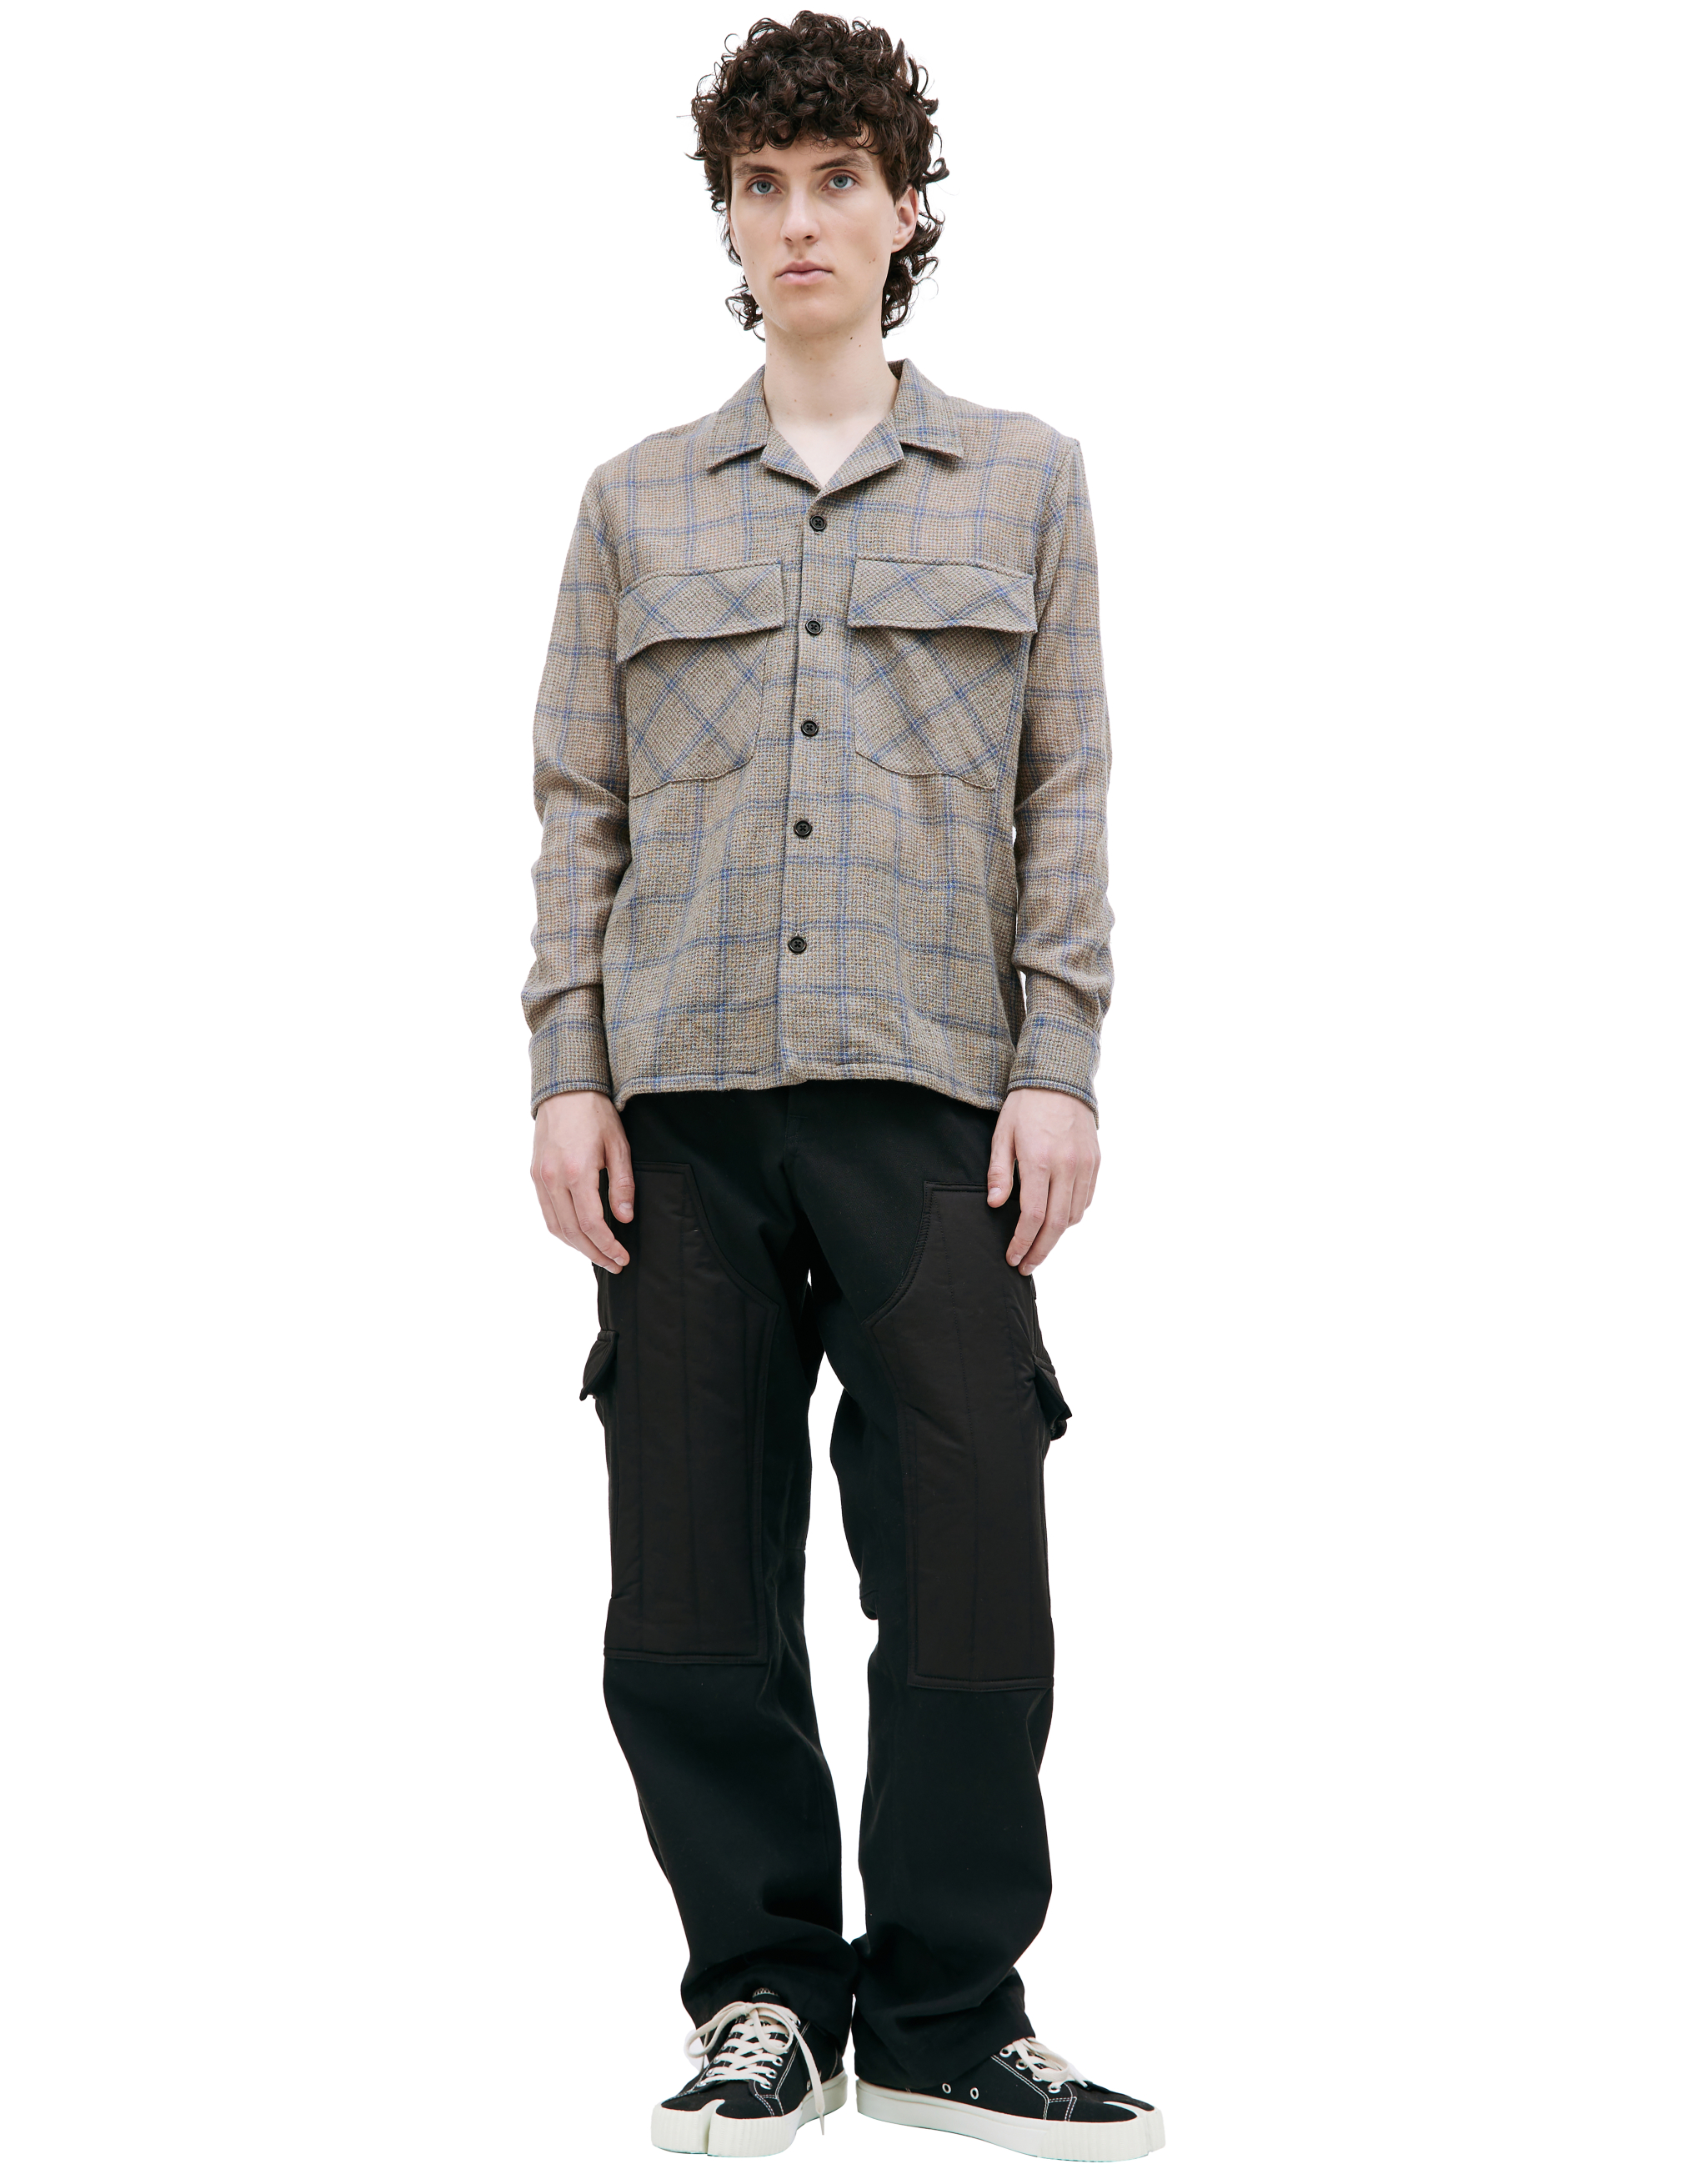 Клетчатая рубашка с накладными карманами BTFL BTFLSS23S006, размер M;L;XL